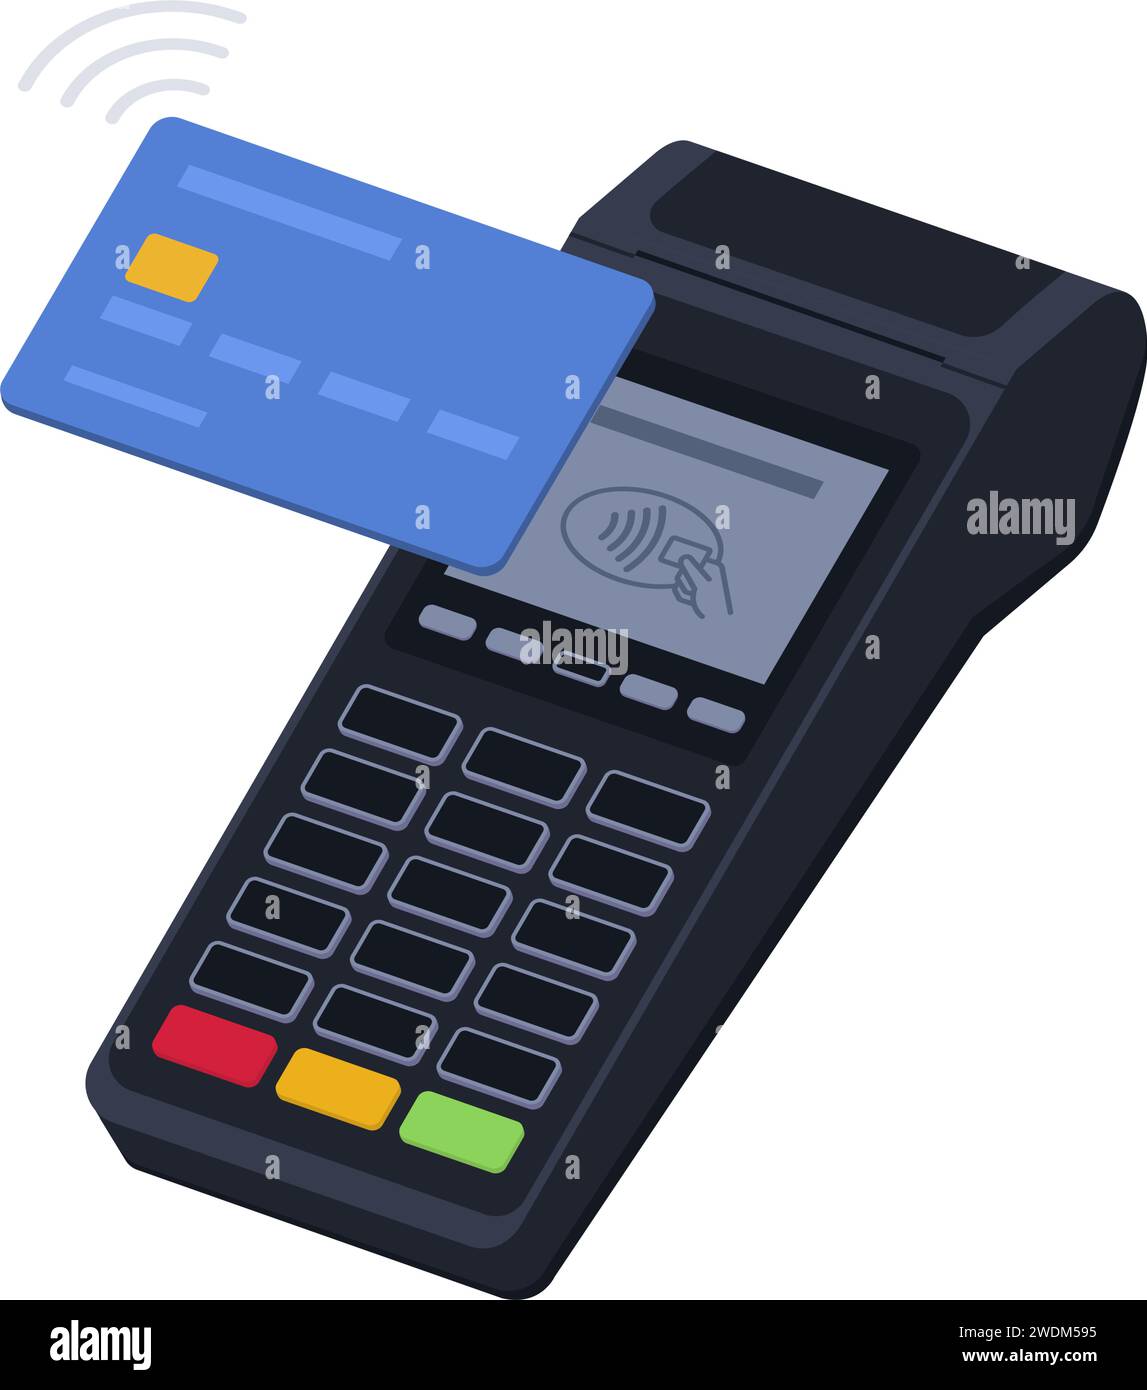 Paiement terminal POS sans contact avec carte de crédit, transactions et concept de paiements Illustration de Vecteur